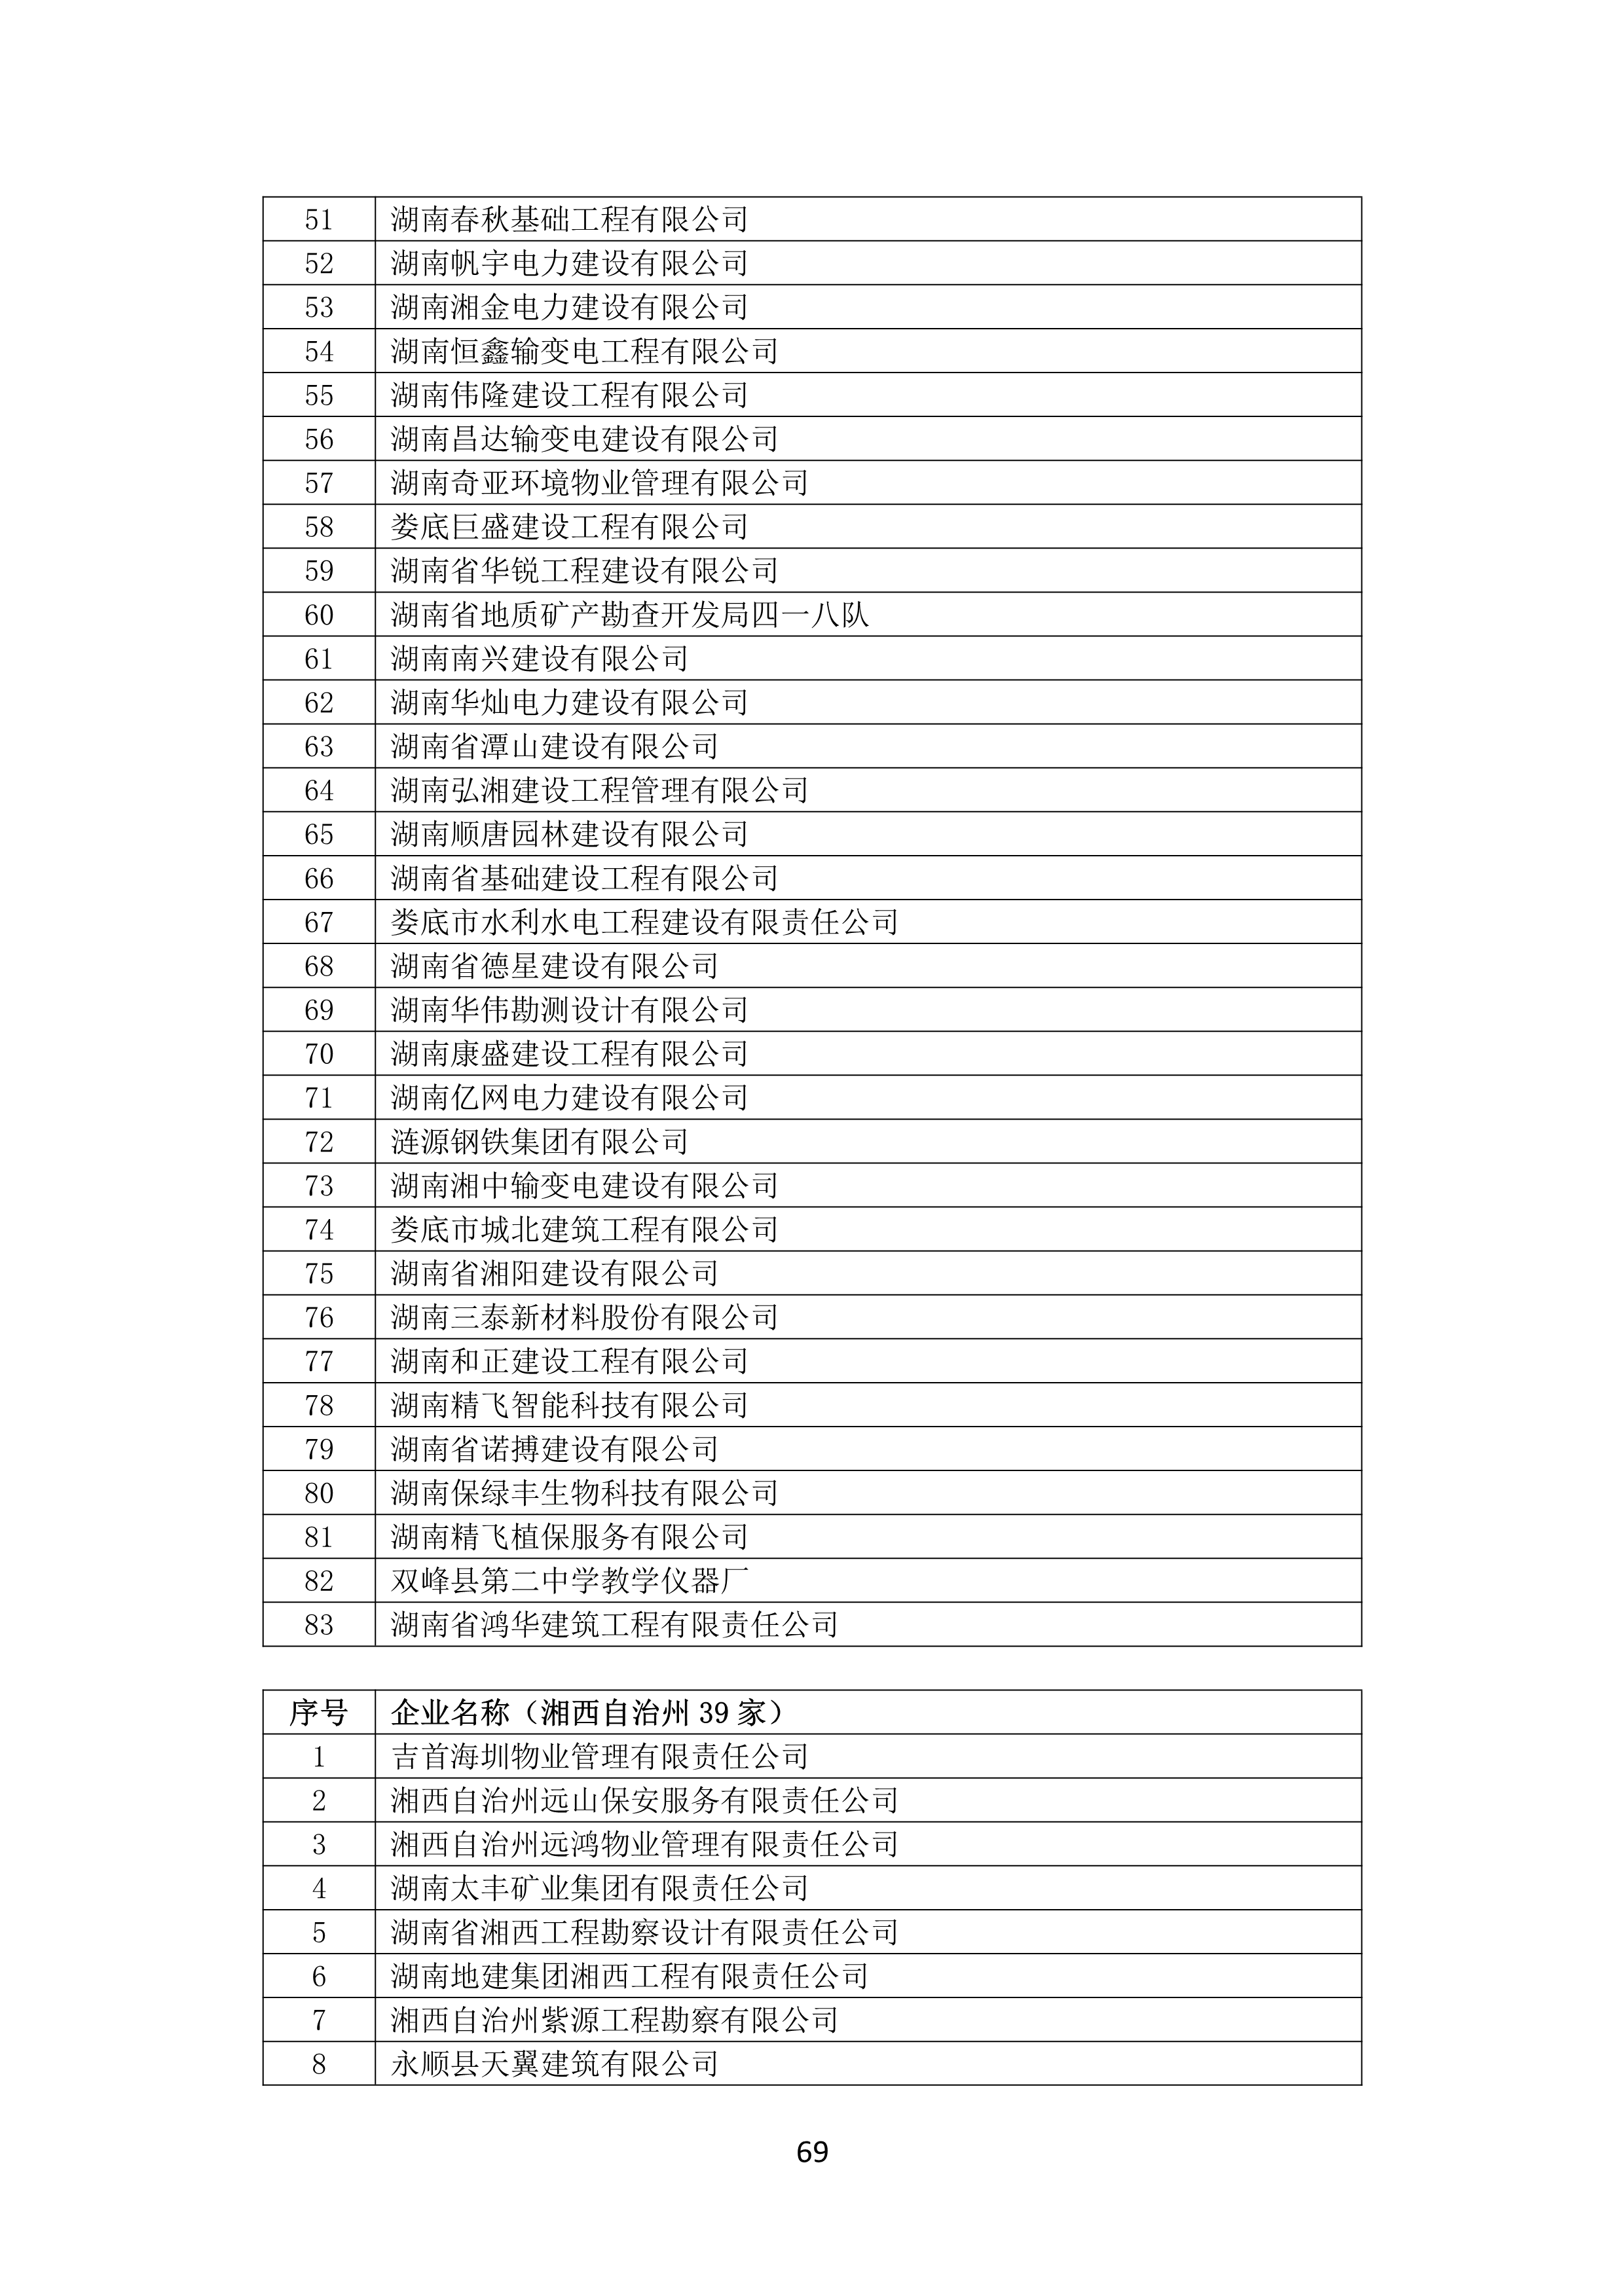 2021 年(nián)度湖南省守合同重信用企業名單_70.png